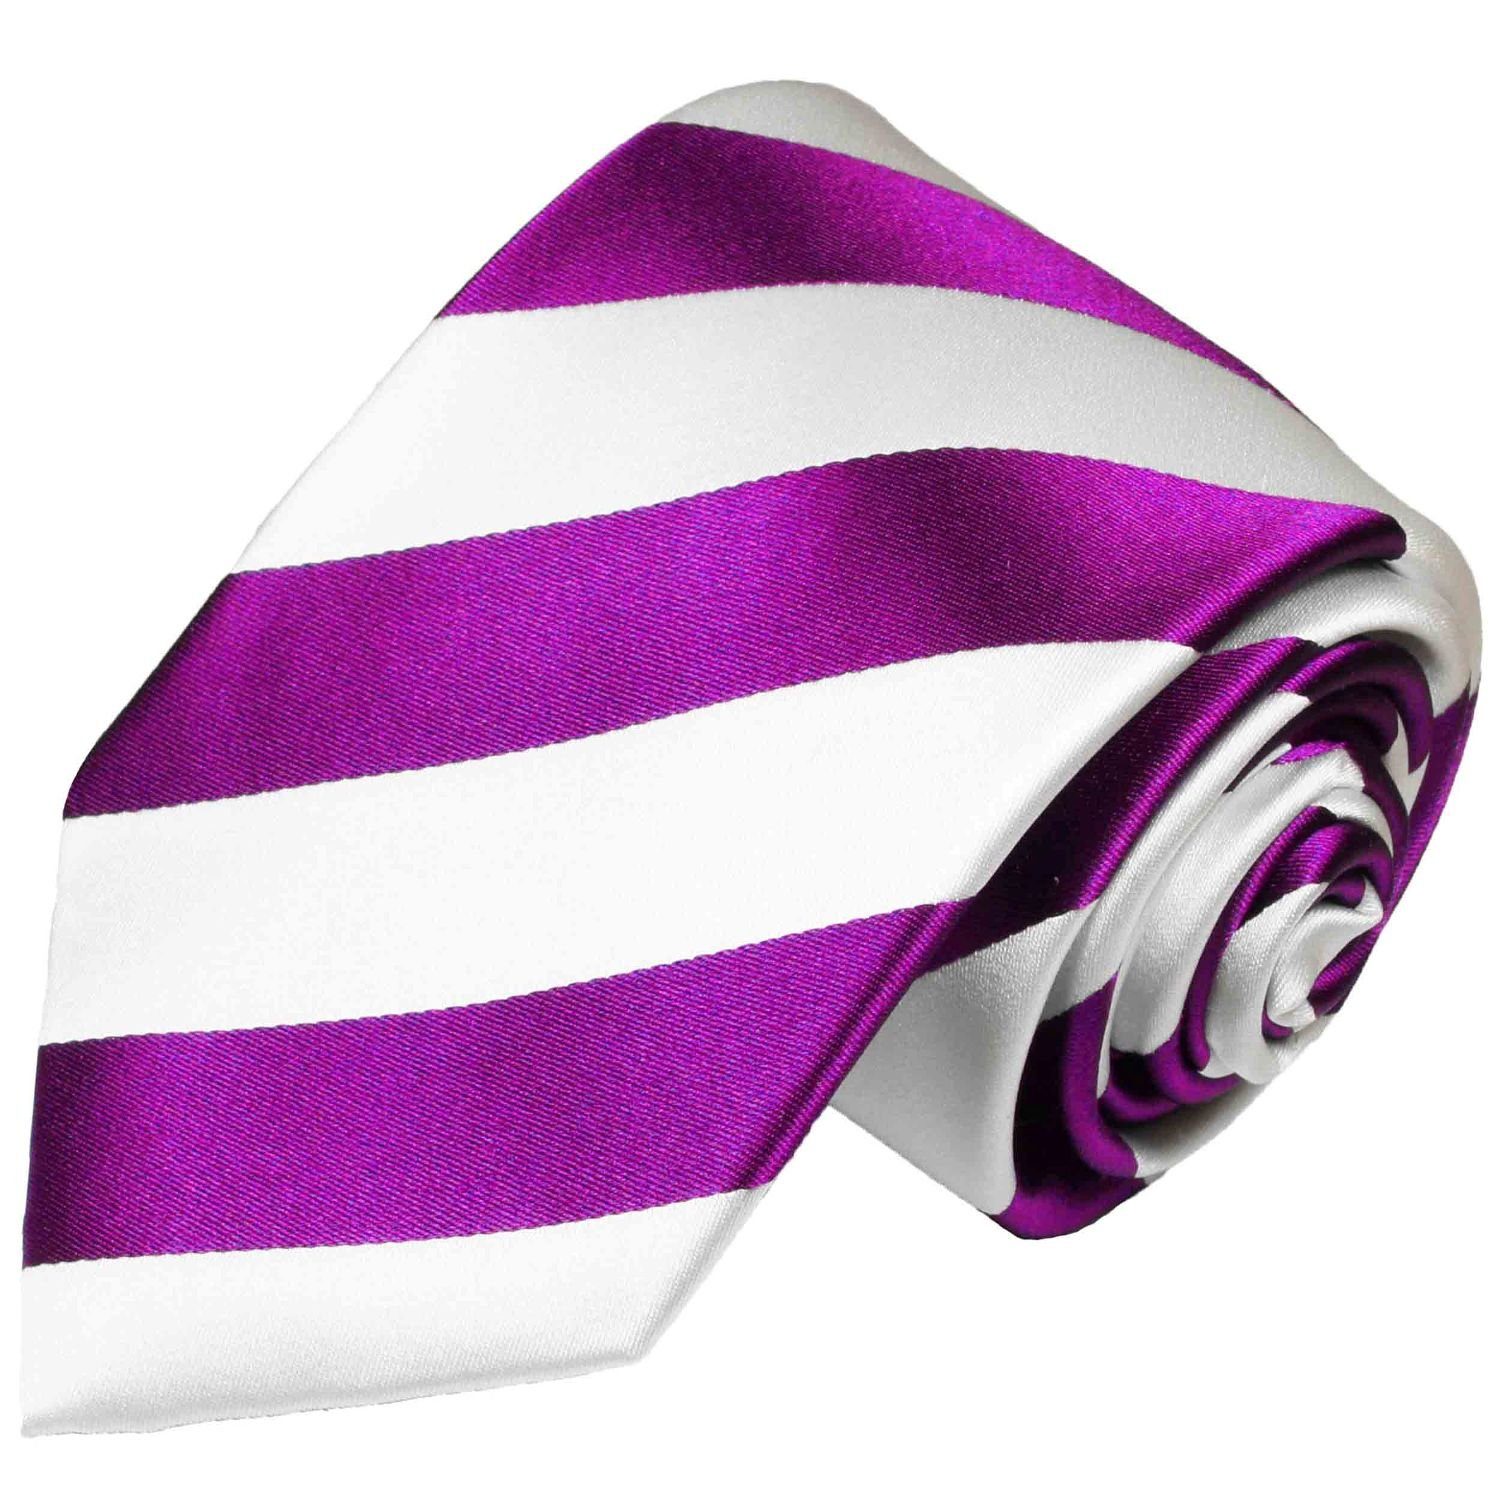 Paul Malone Krawatte Herren Seidenkrawatte Streifen Schlips modern gestreift 100% Seide Schmal (6cm) pink